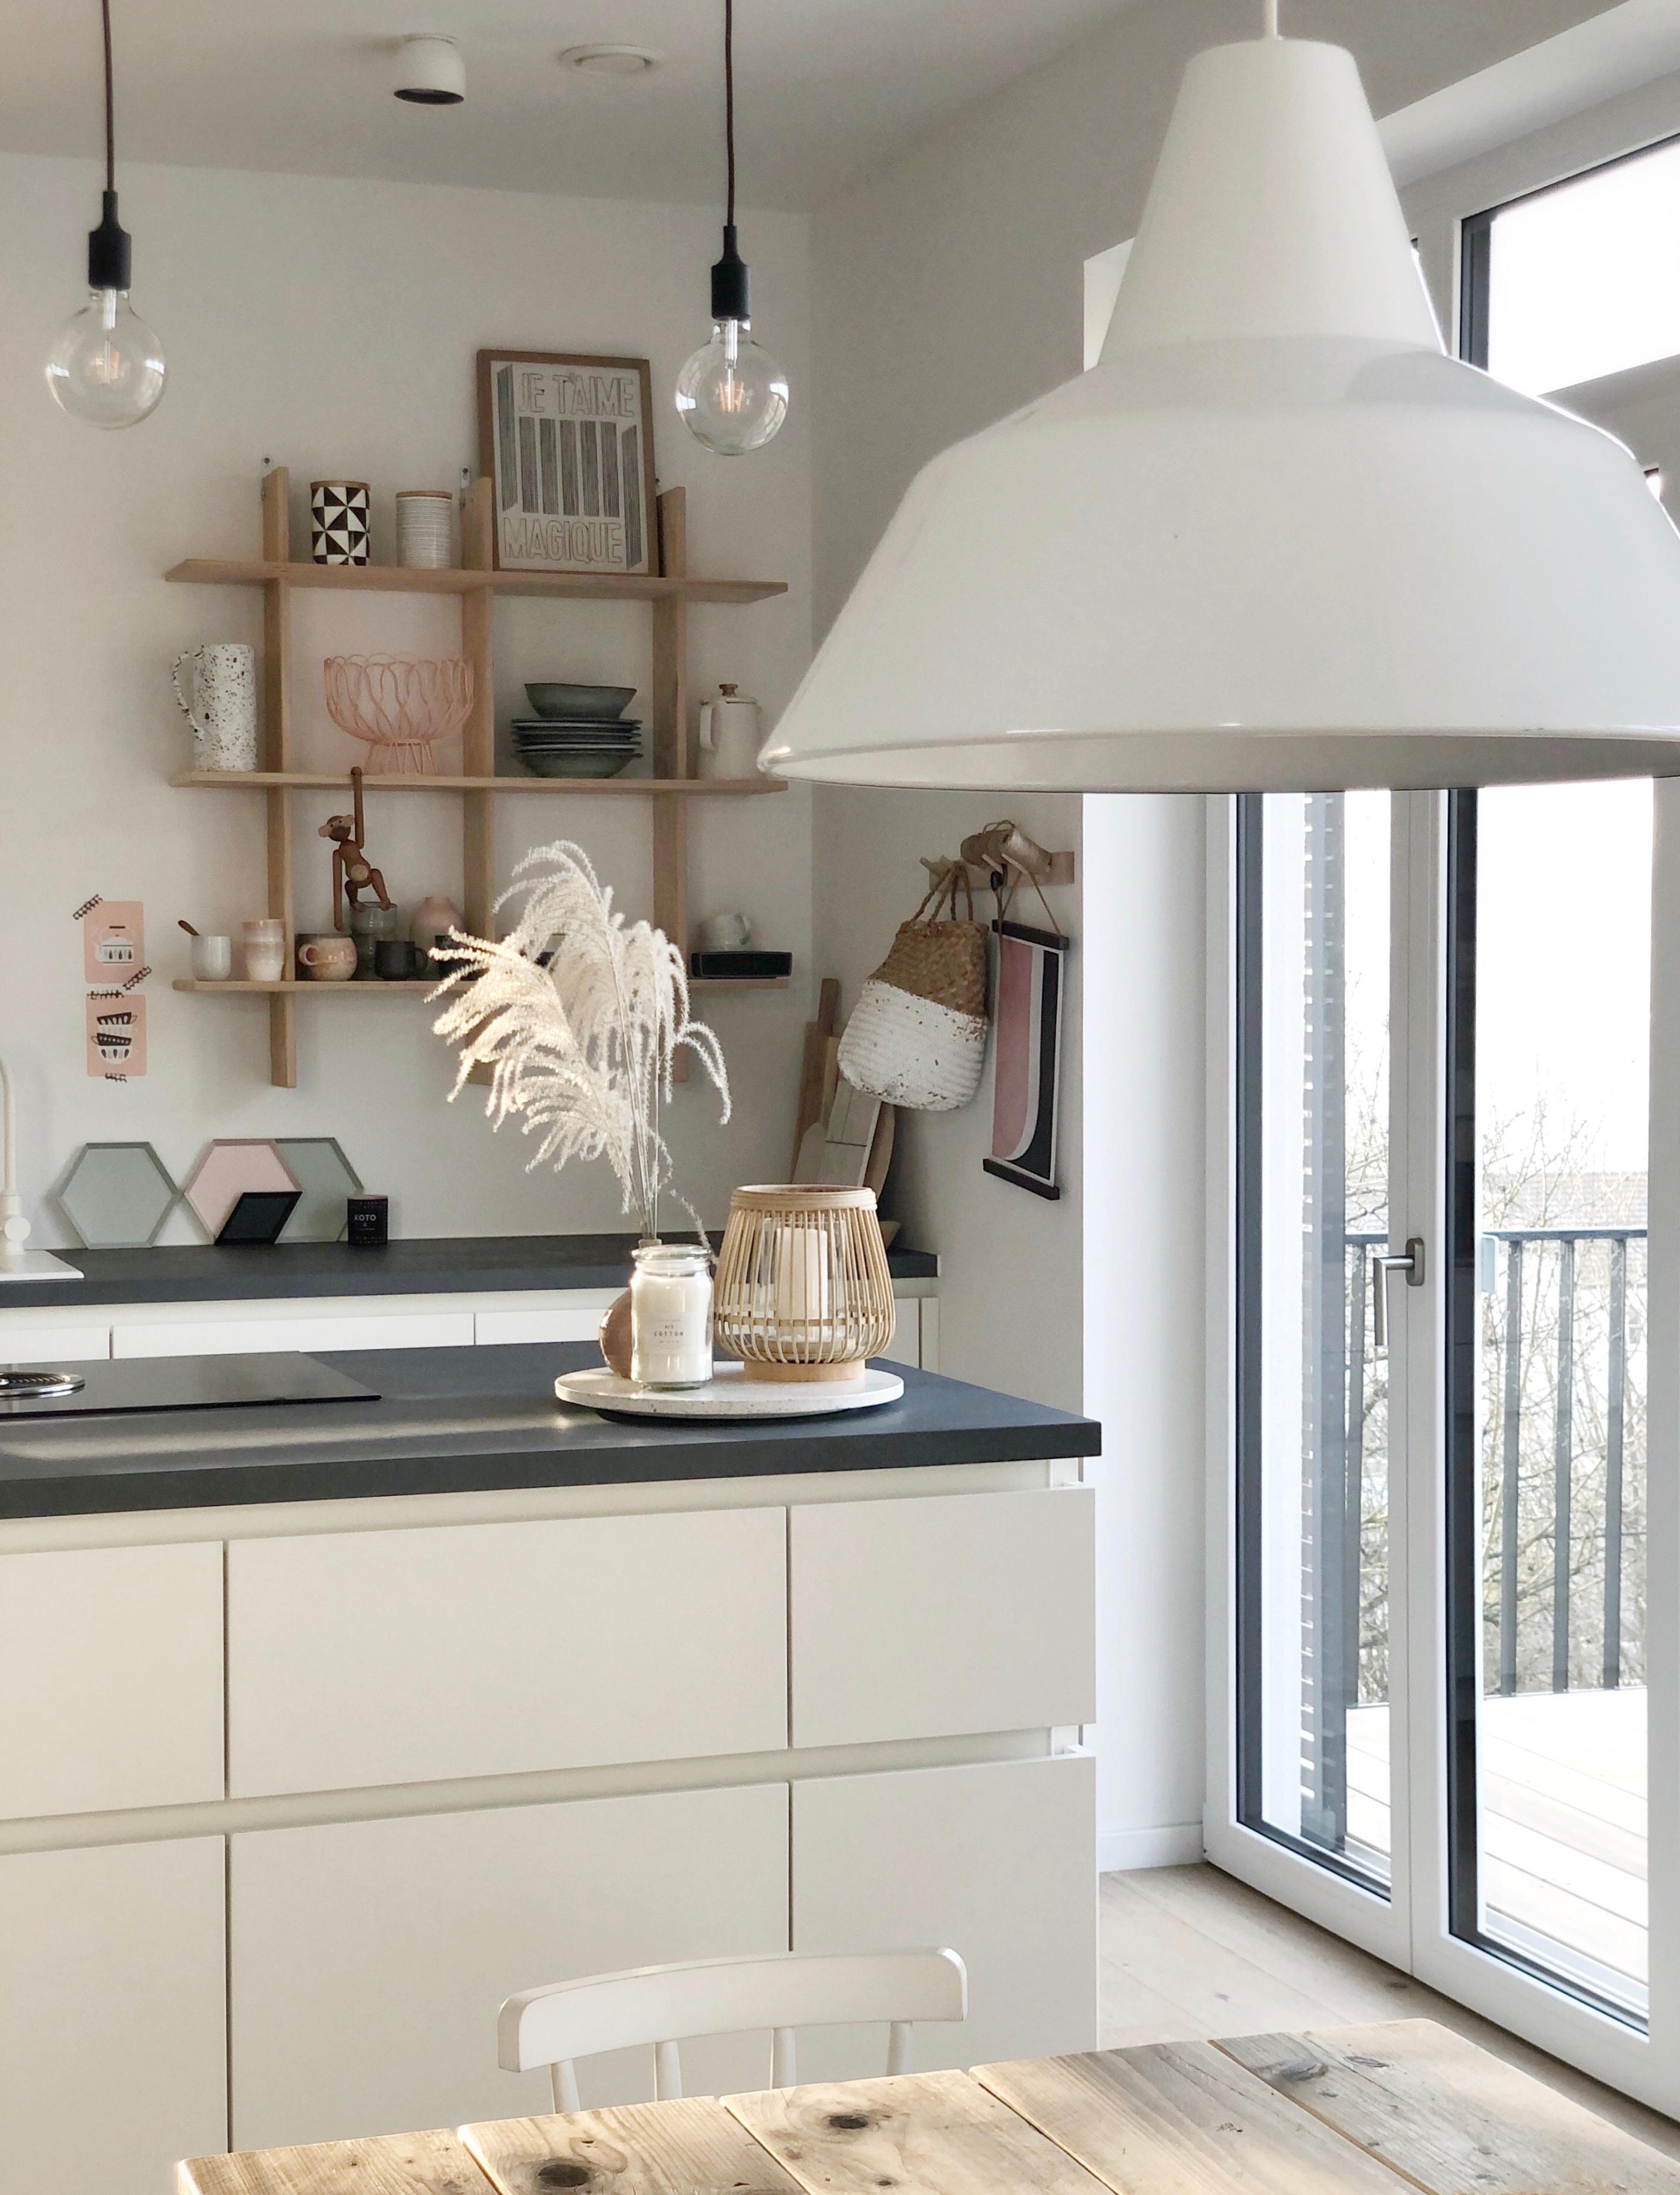 Sonnige Küchengrüße!
#kitchen#küche#whitehome#whiteandwood#nordic#minimalism